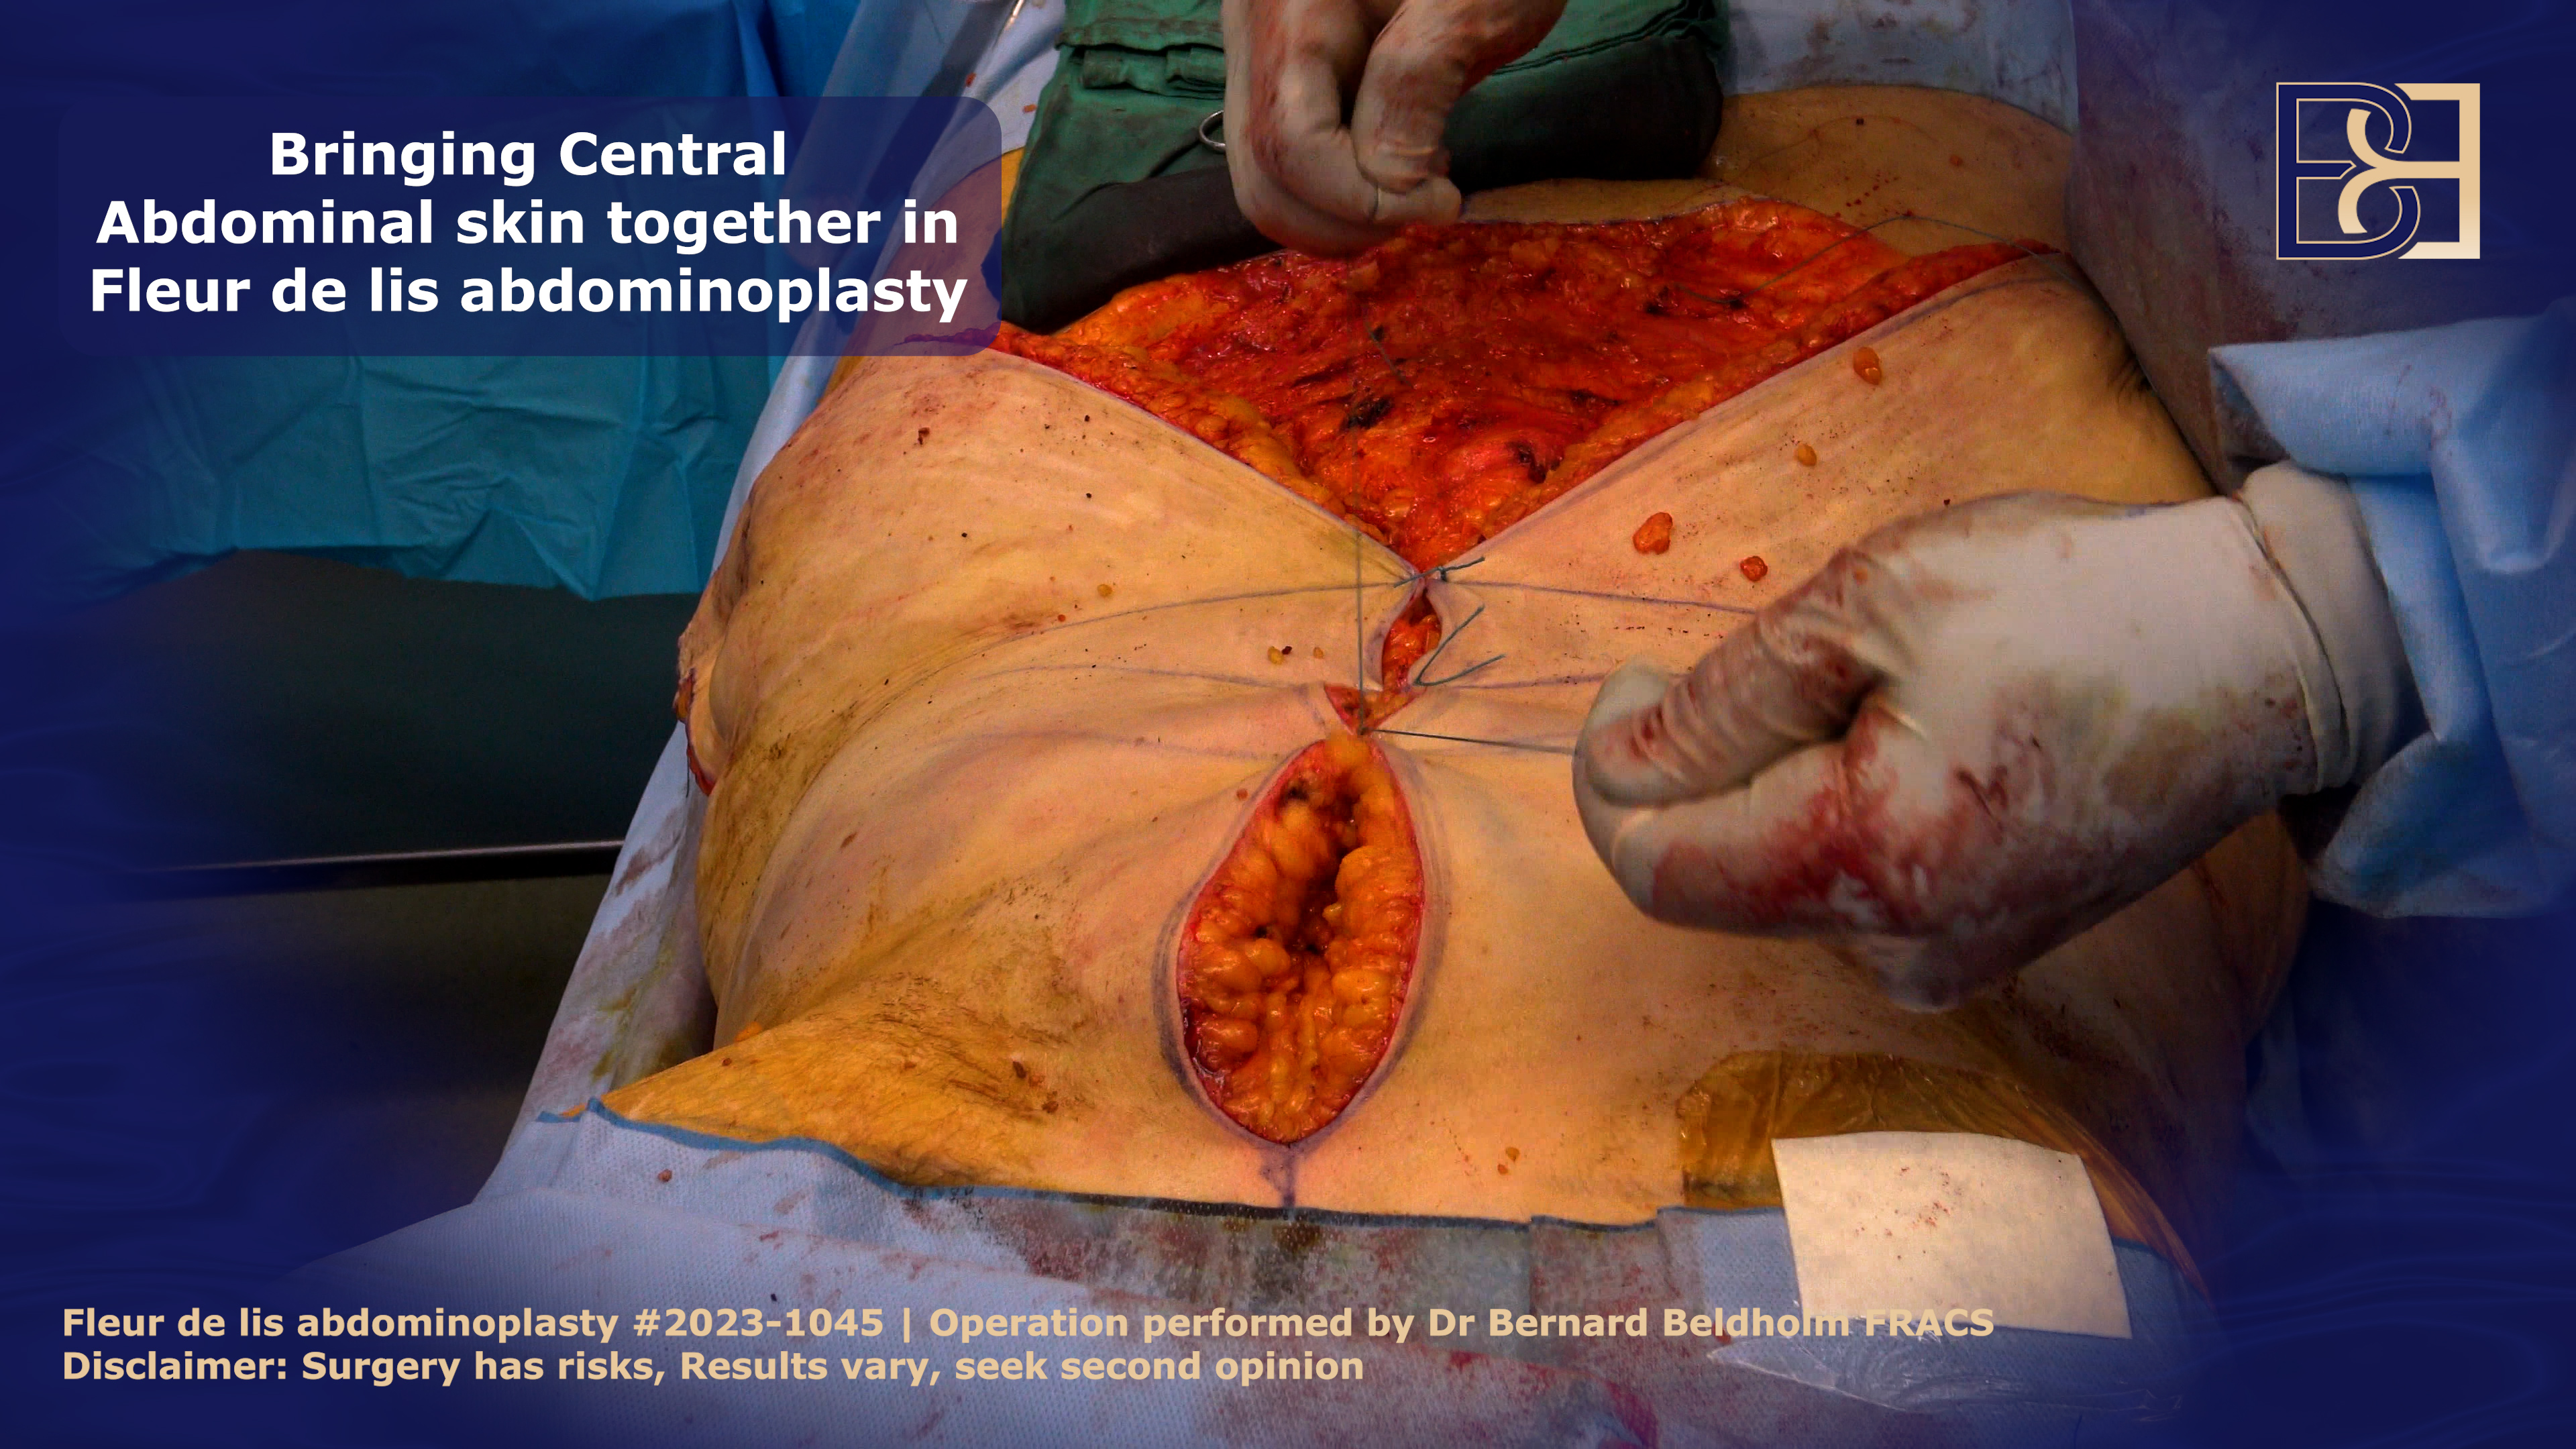 Fleur de lis Abdominoplasty involves an additional vertical incision | Dr Bernard Beldholm